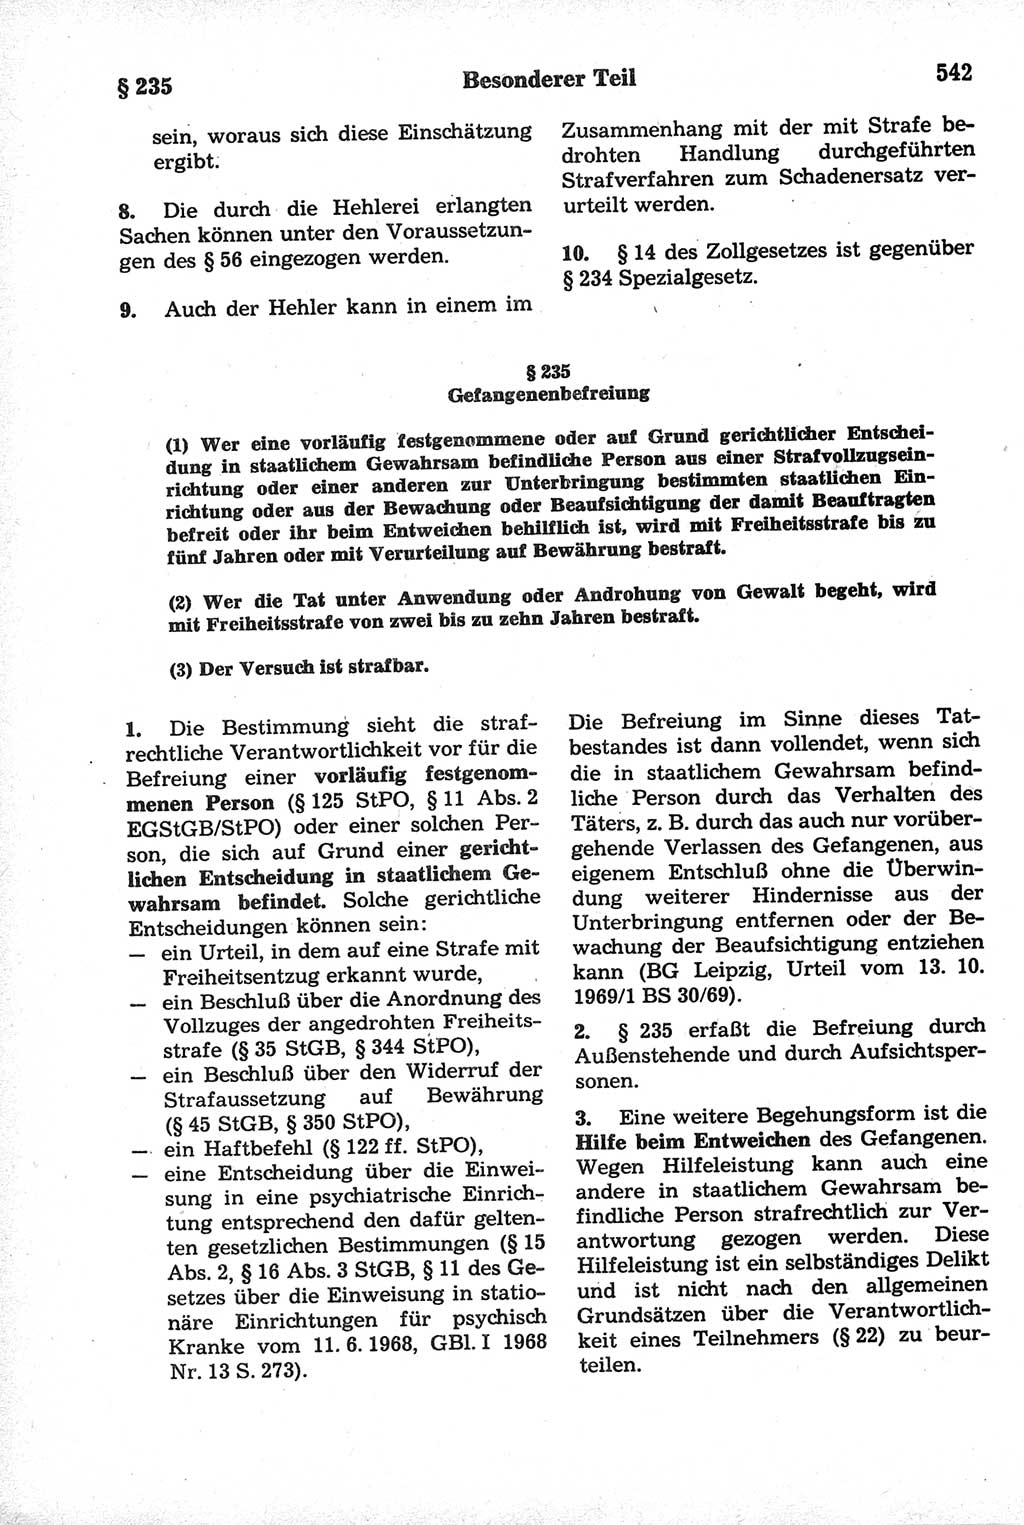 Strafrecht der Deutschen Demokratischen Republik (DDR), Kommentar zum Strafgesetzbuch (StGB) 1981, Seite 542 (Strafr. DDR Komm. StGB 1981, S. 542)